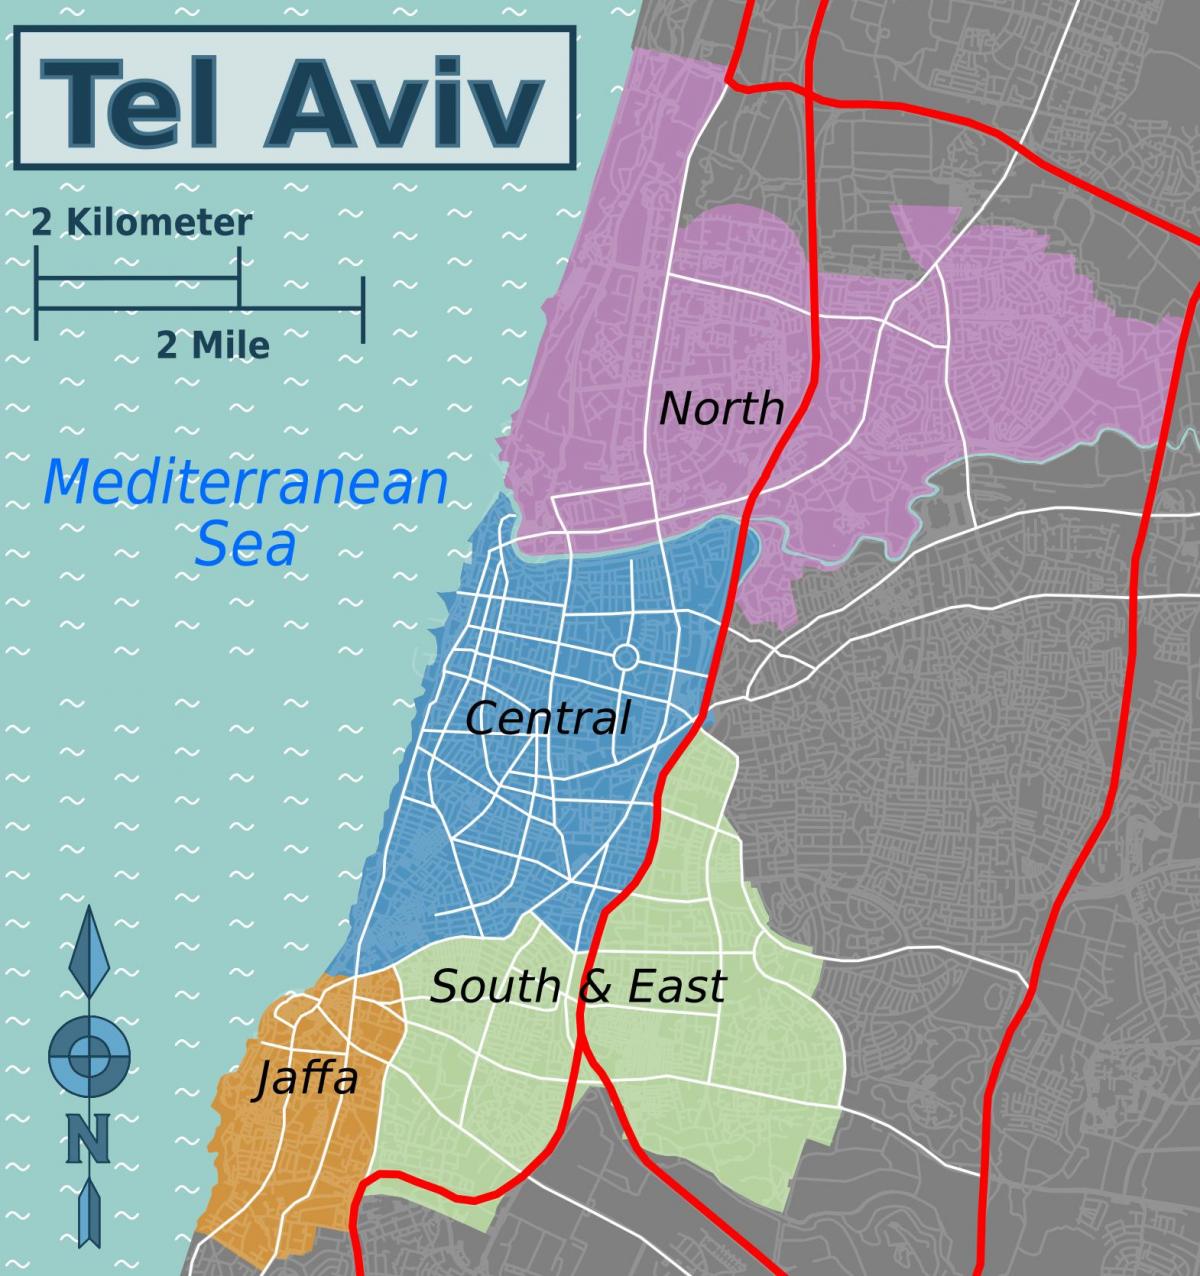 Mapa del distrito de Tel Aviv